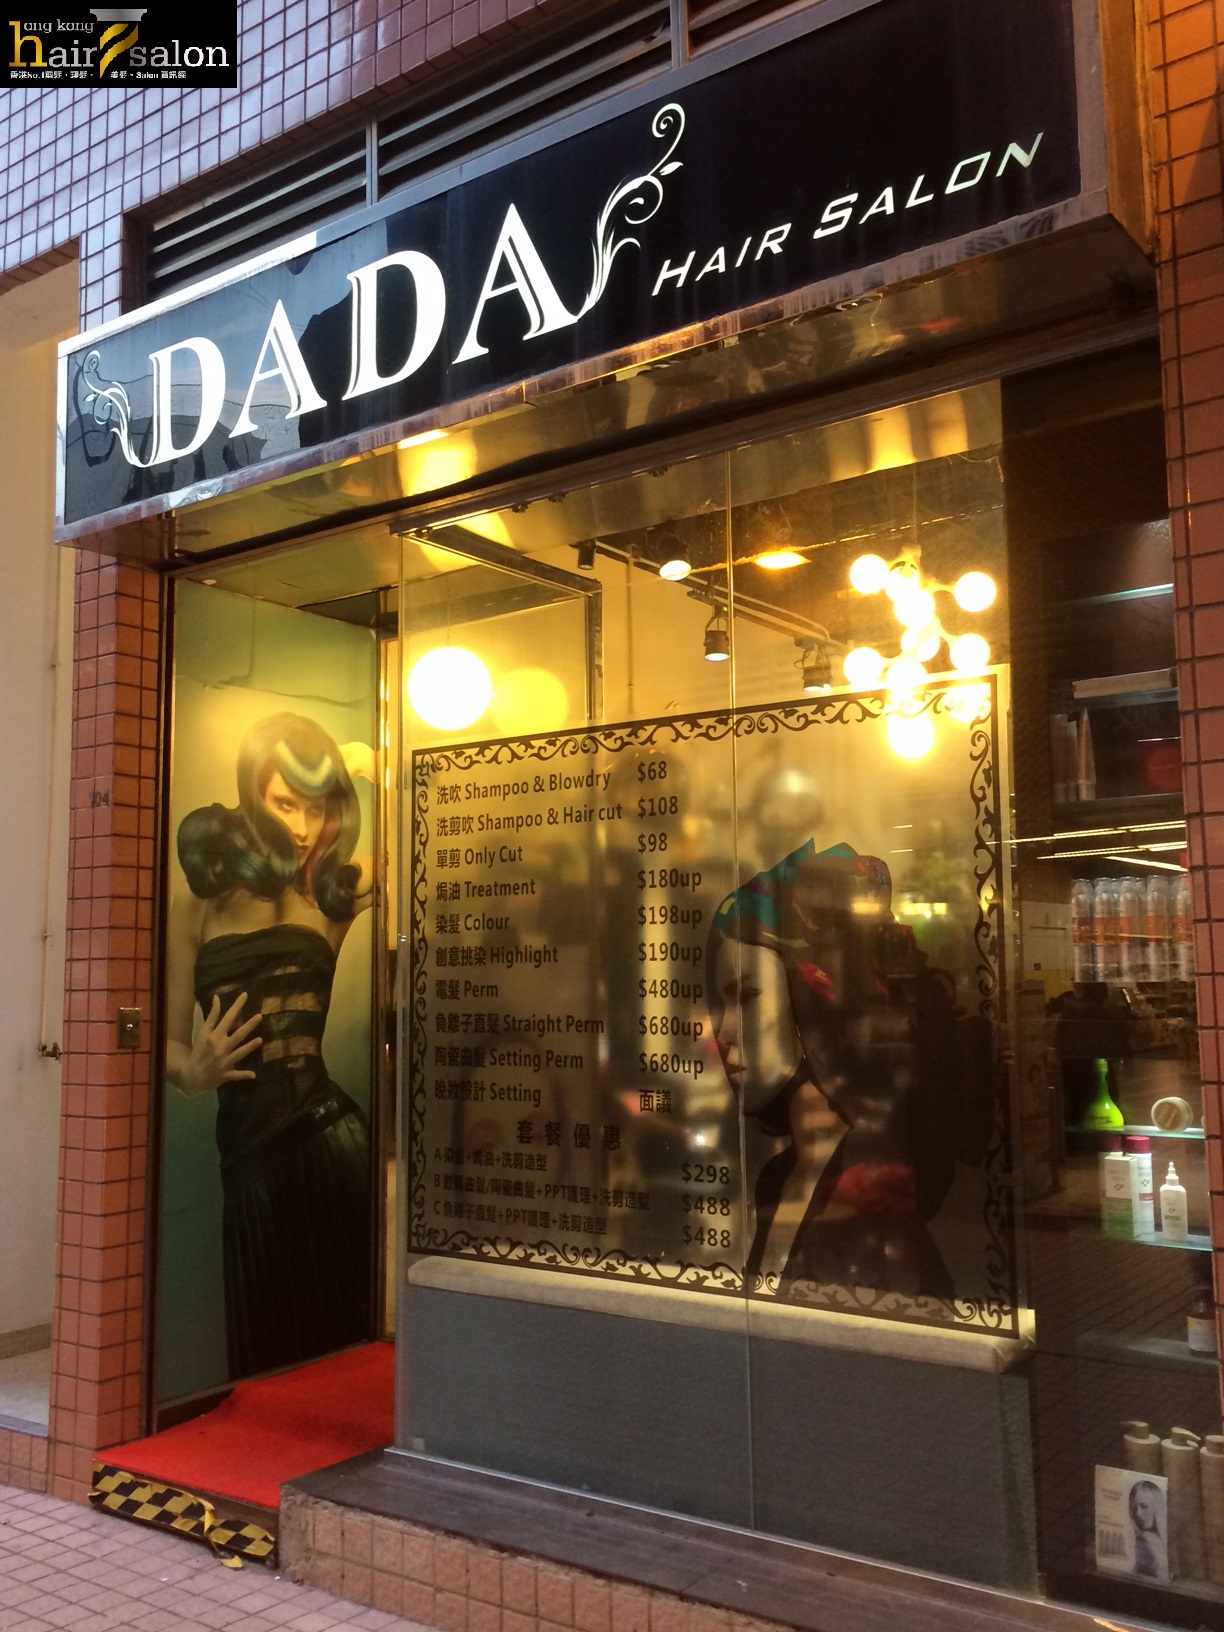 Electric hair: DaDa Hair Salon